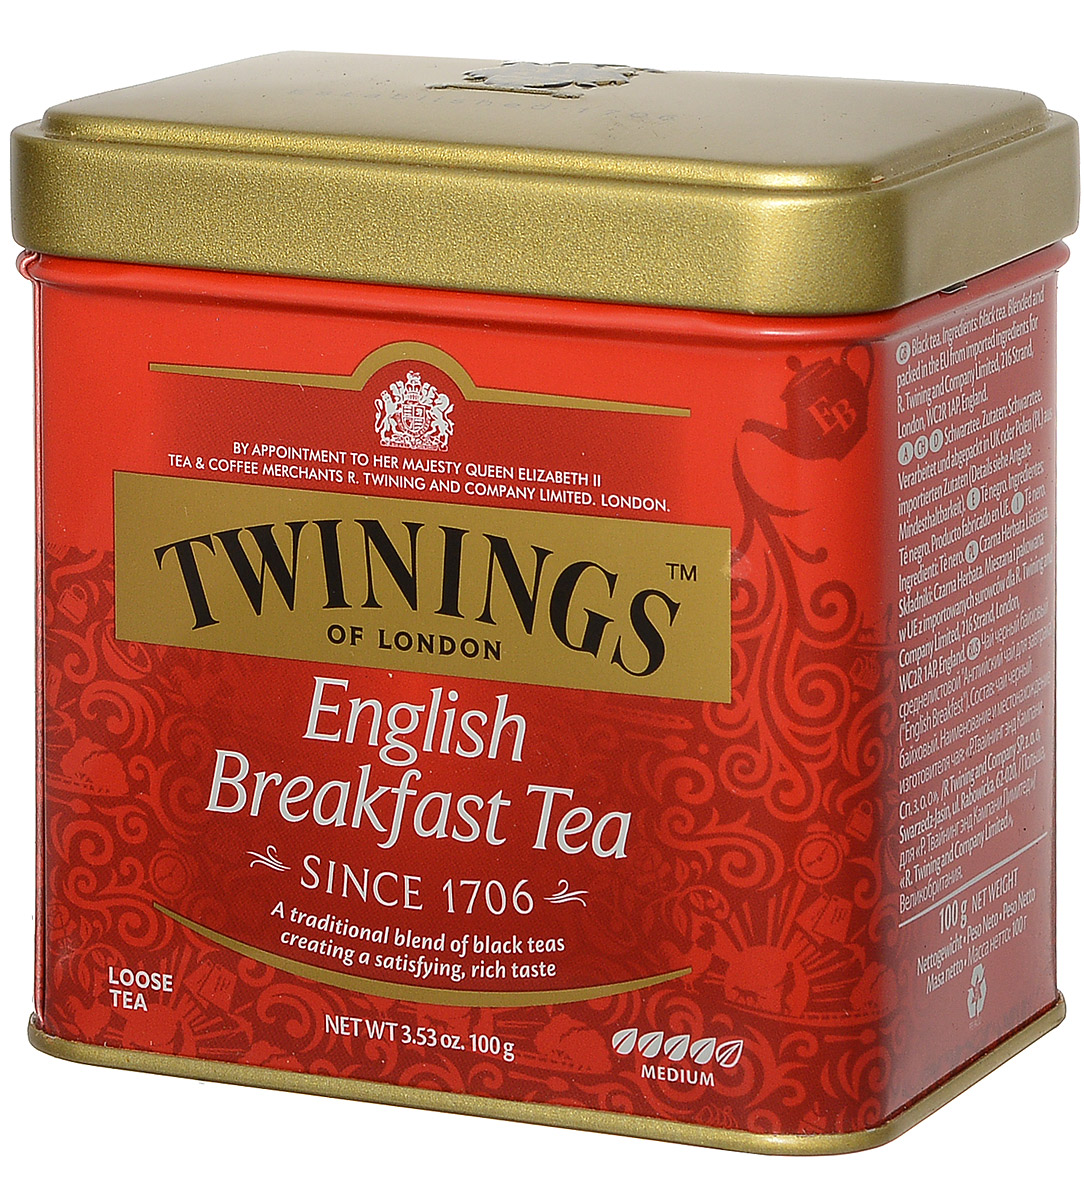 Английский чай марки название и фото